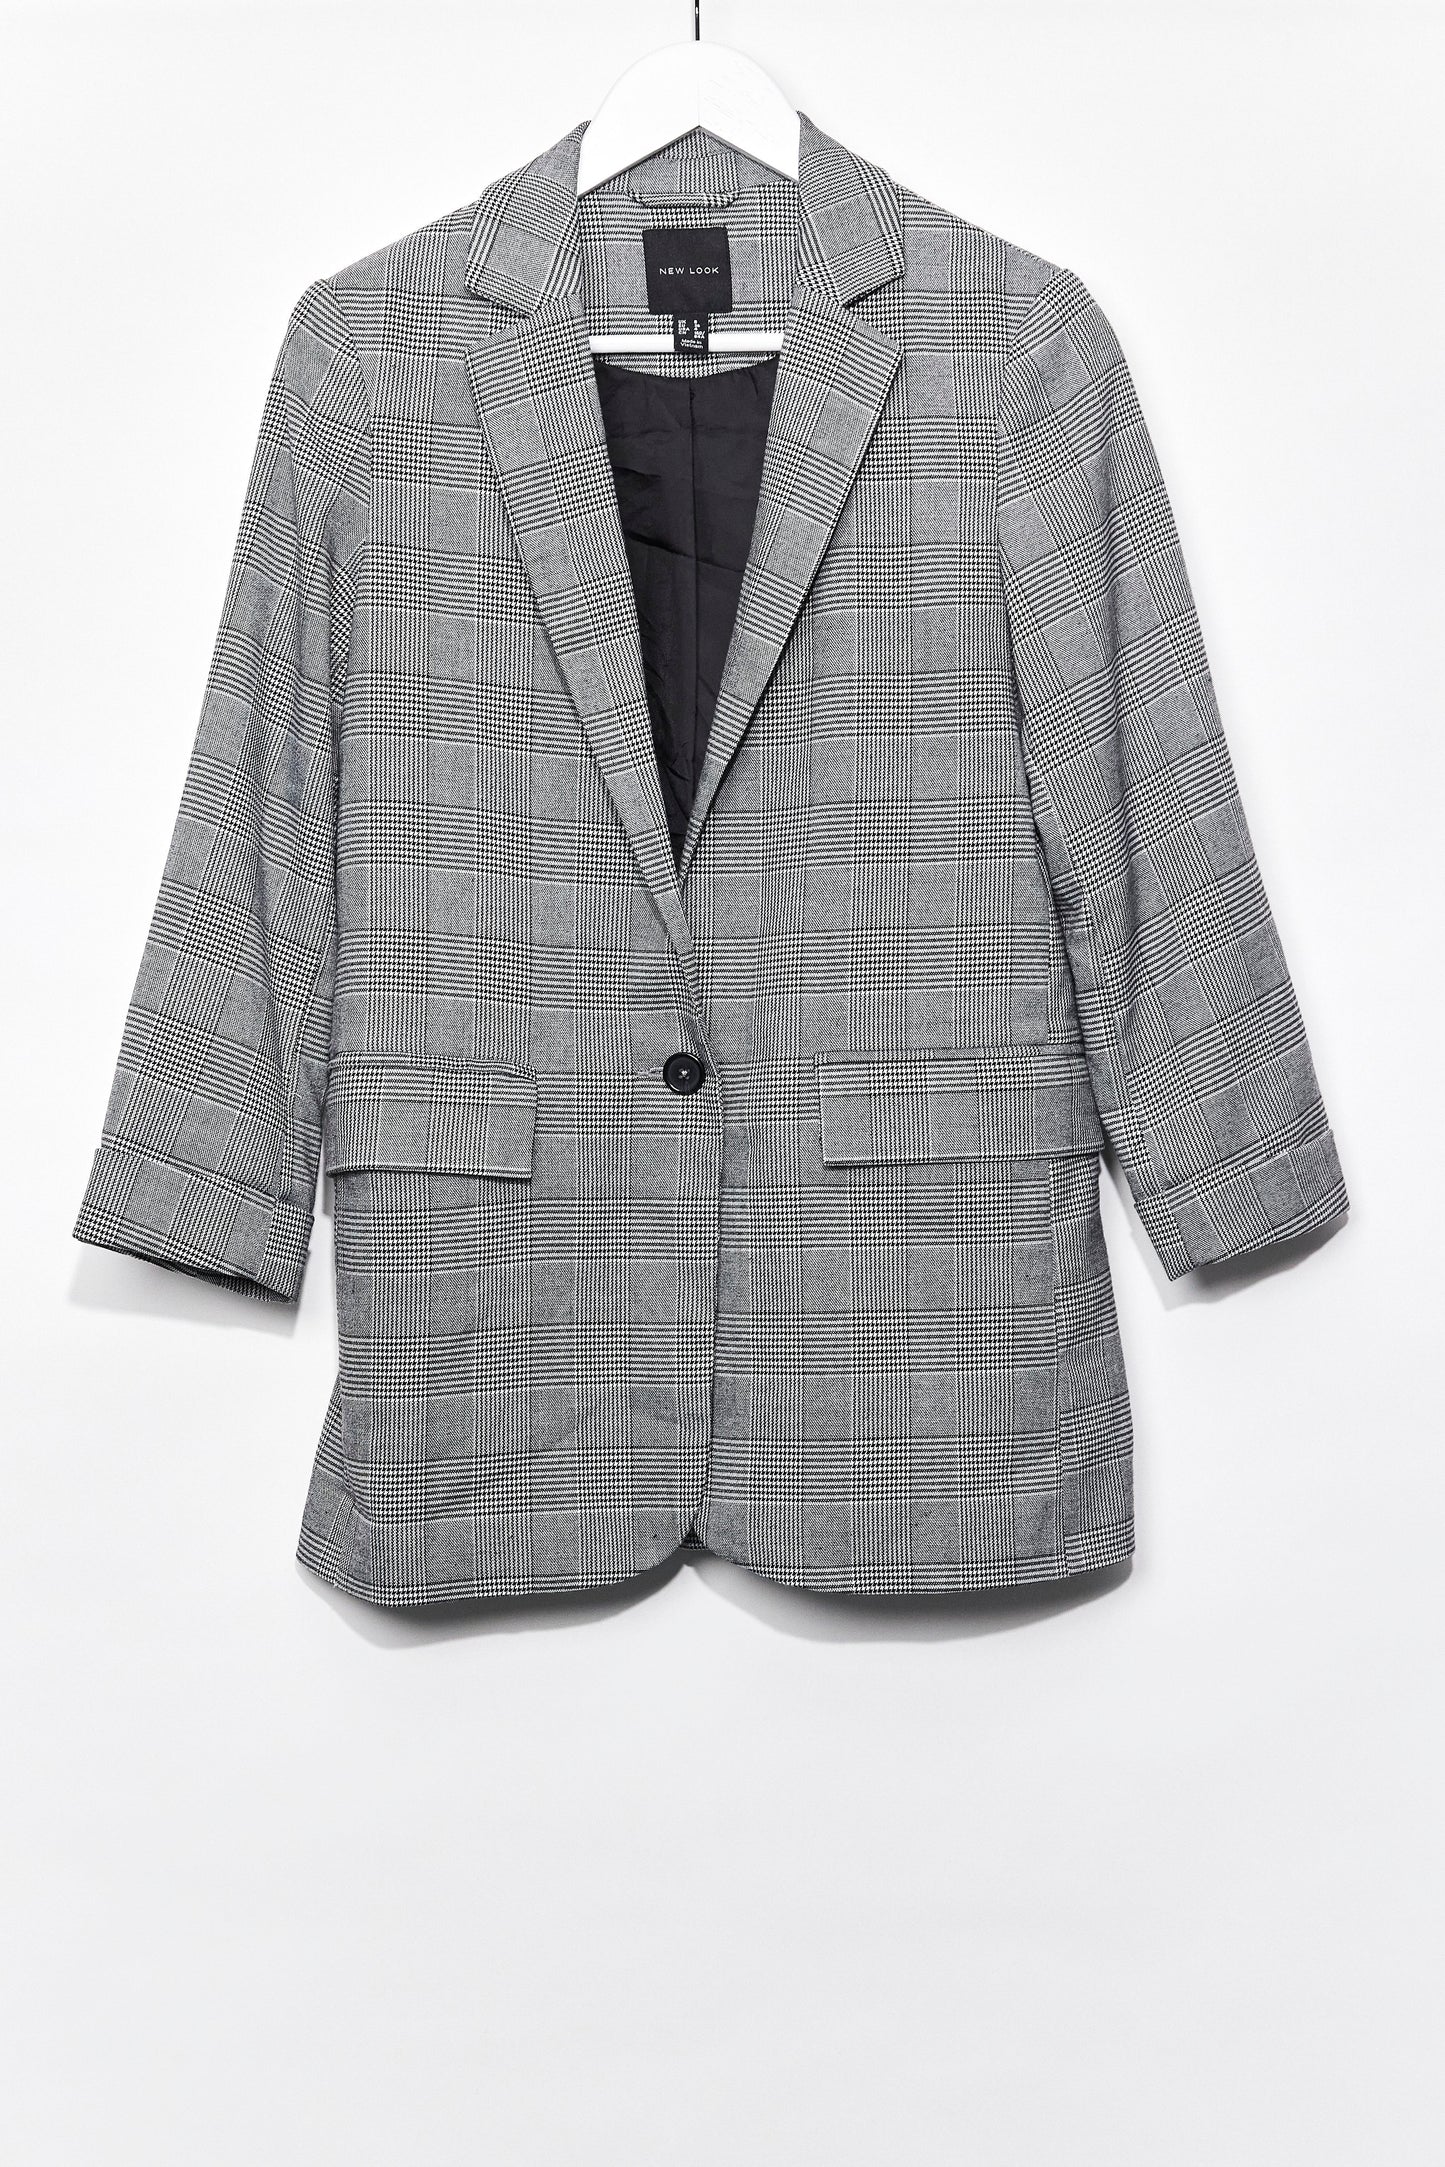 Womens New Look Grey check blazer size 8